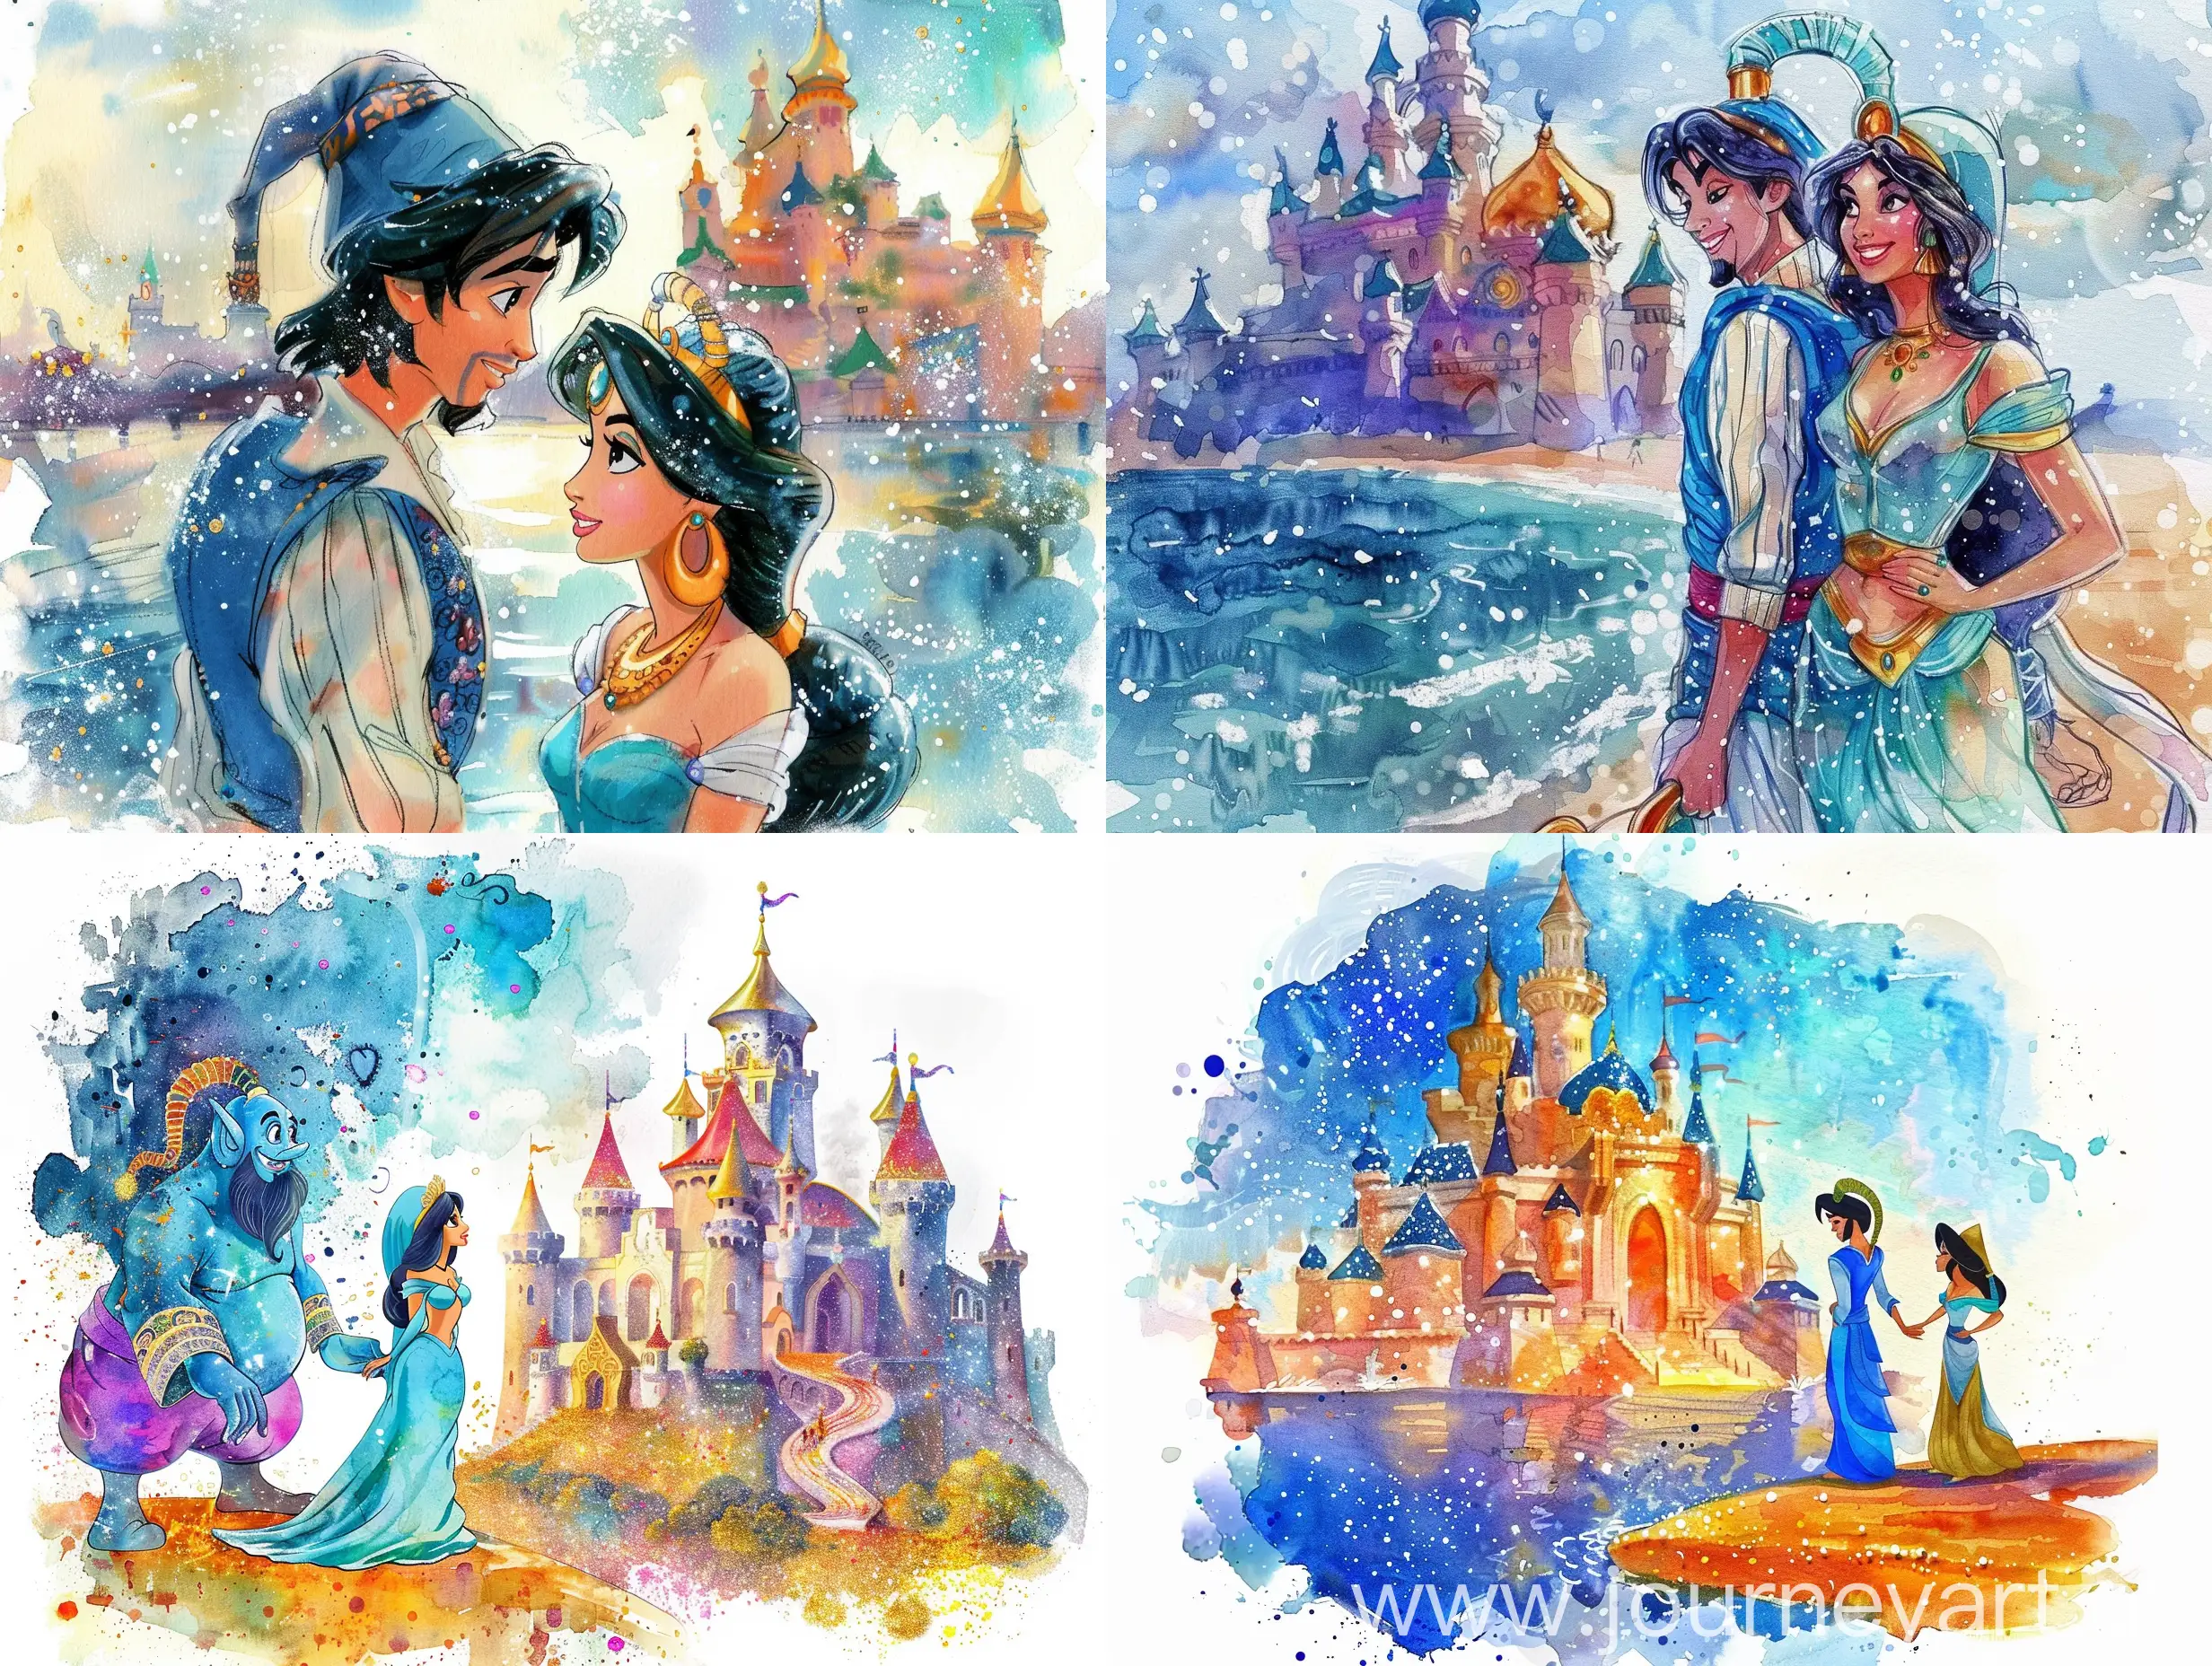 Aladdin-and-Jasmine-near-the-Castle-in-a-Fantasy-Watercolor-Scene